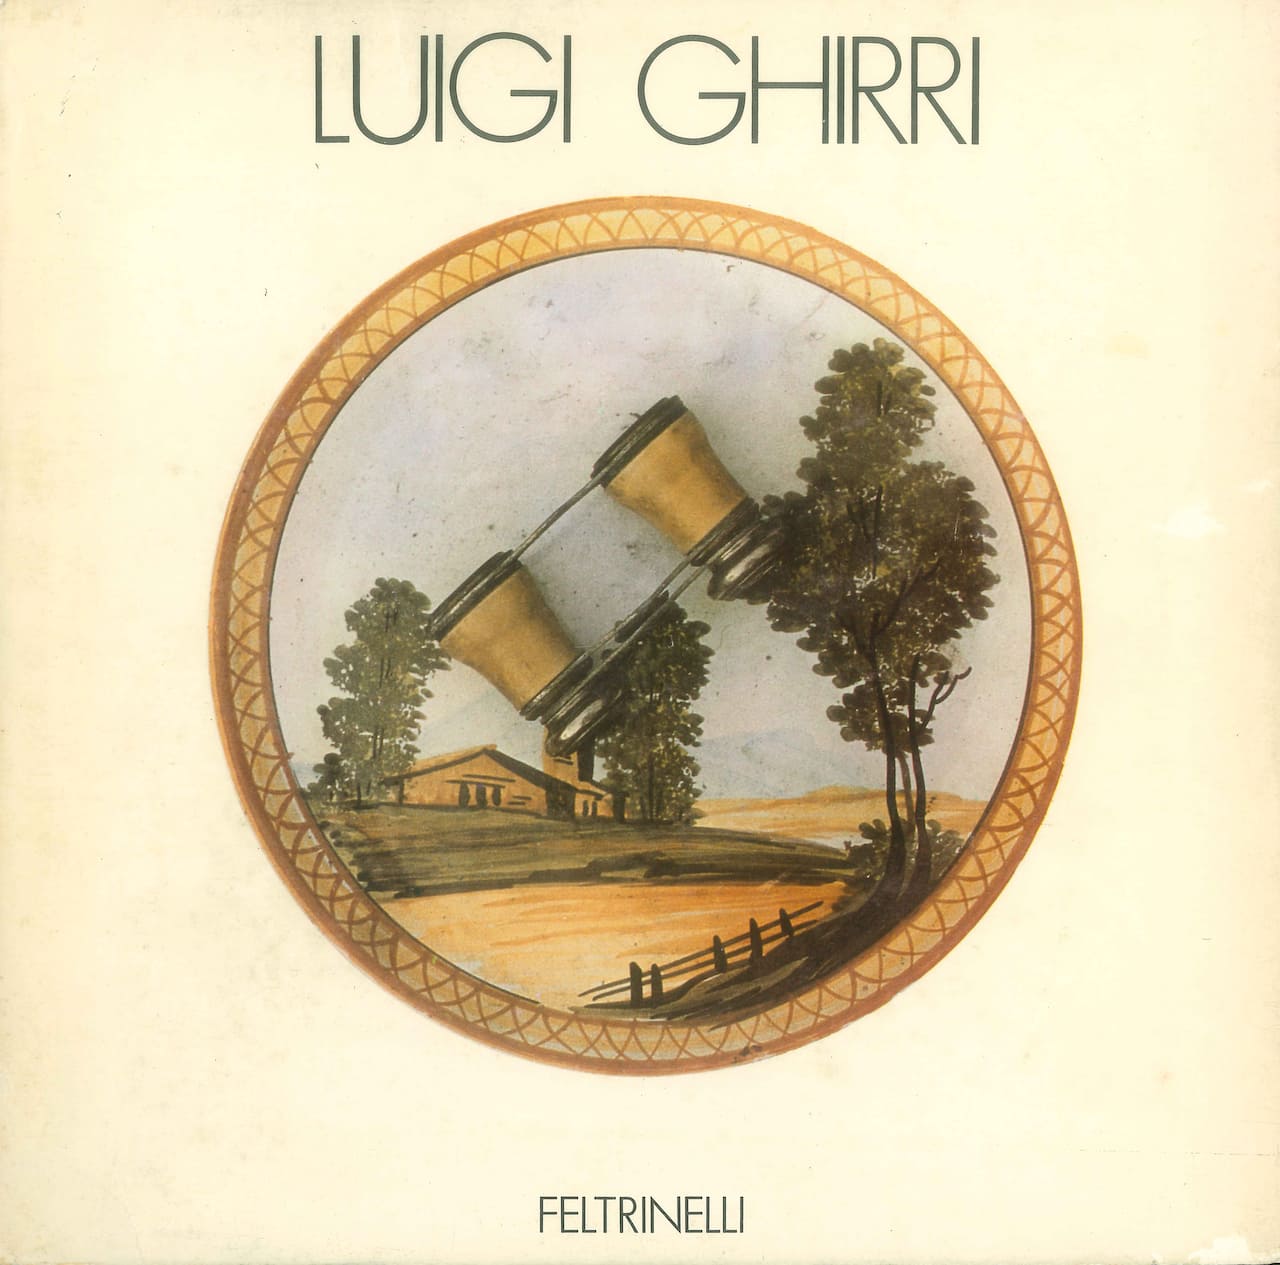 Luigi Ghirri, 1979